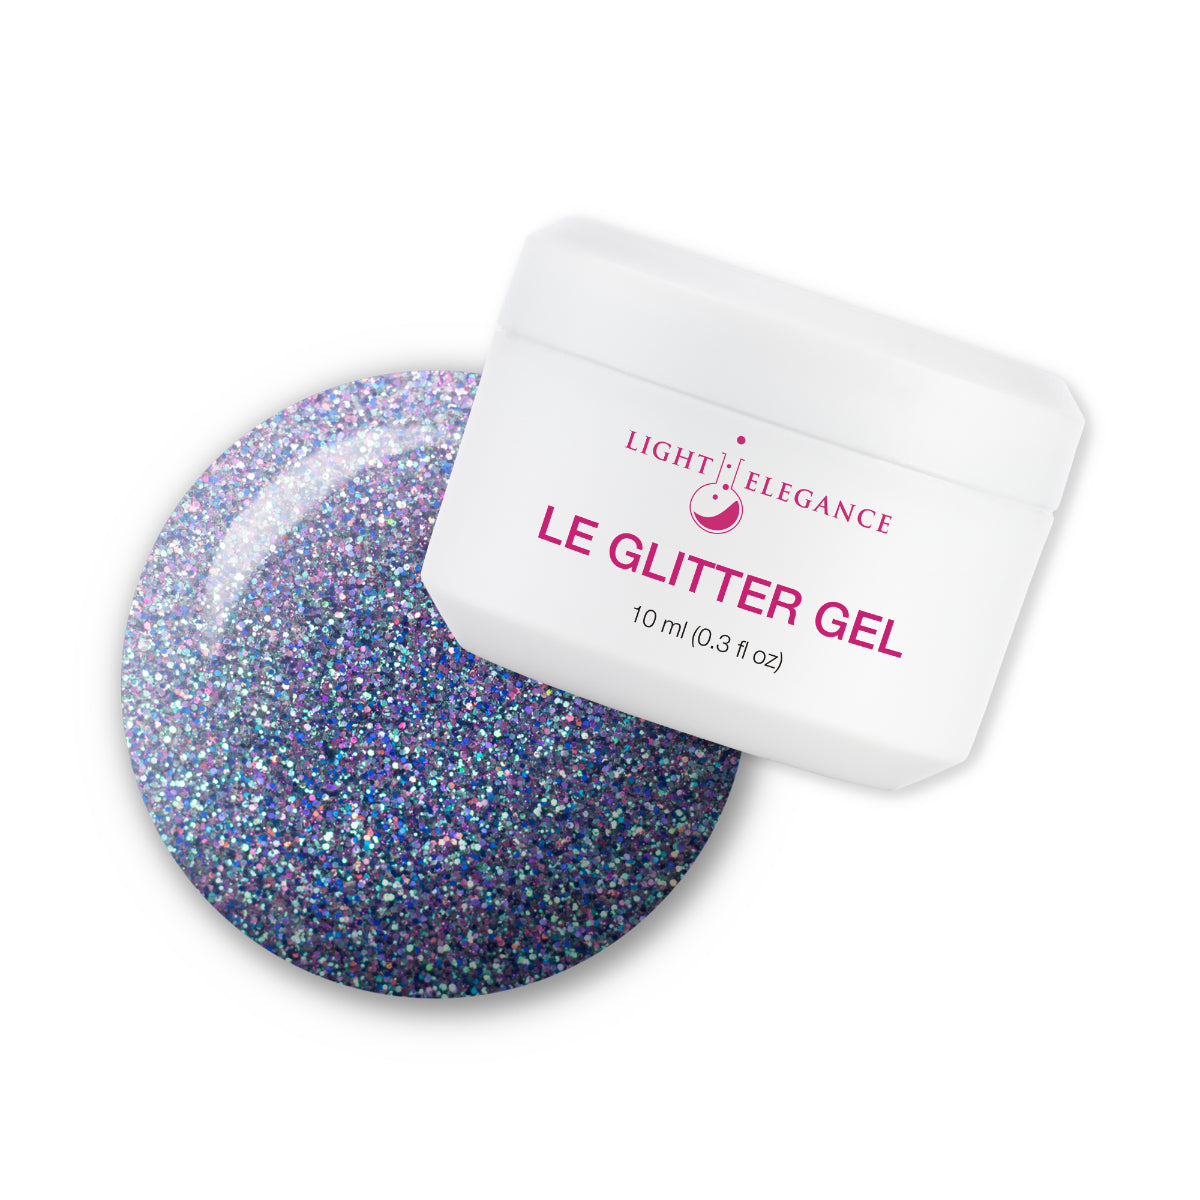 Light Elegance Glitter Gel - Tough Act to Follow :: New Packaging